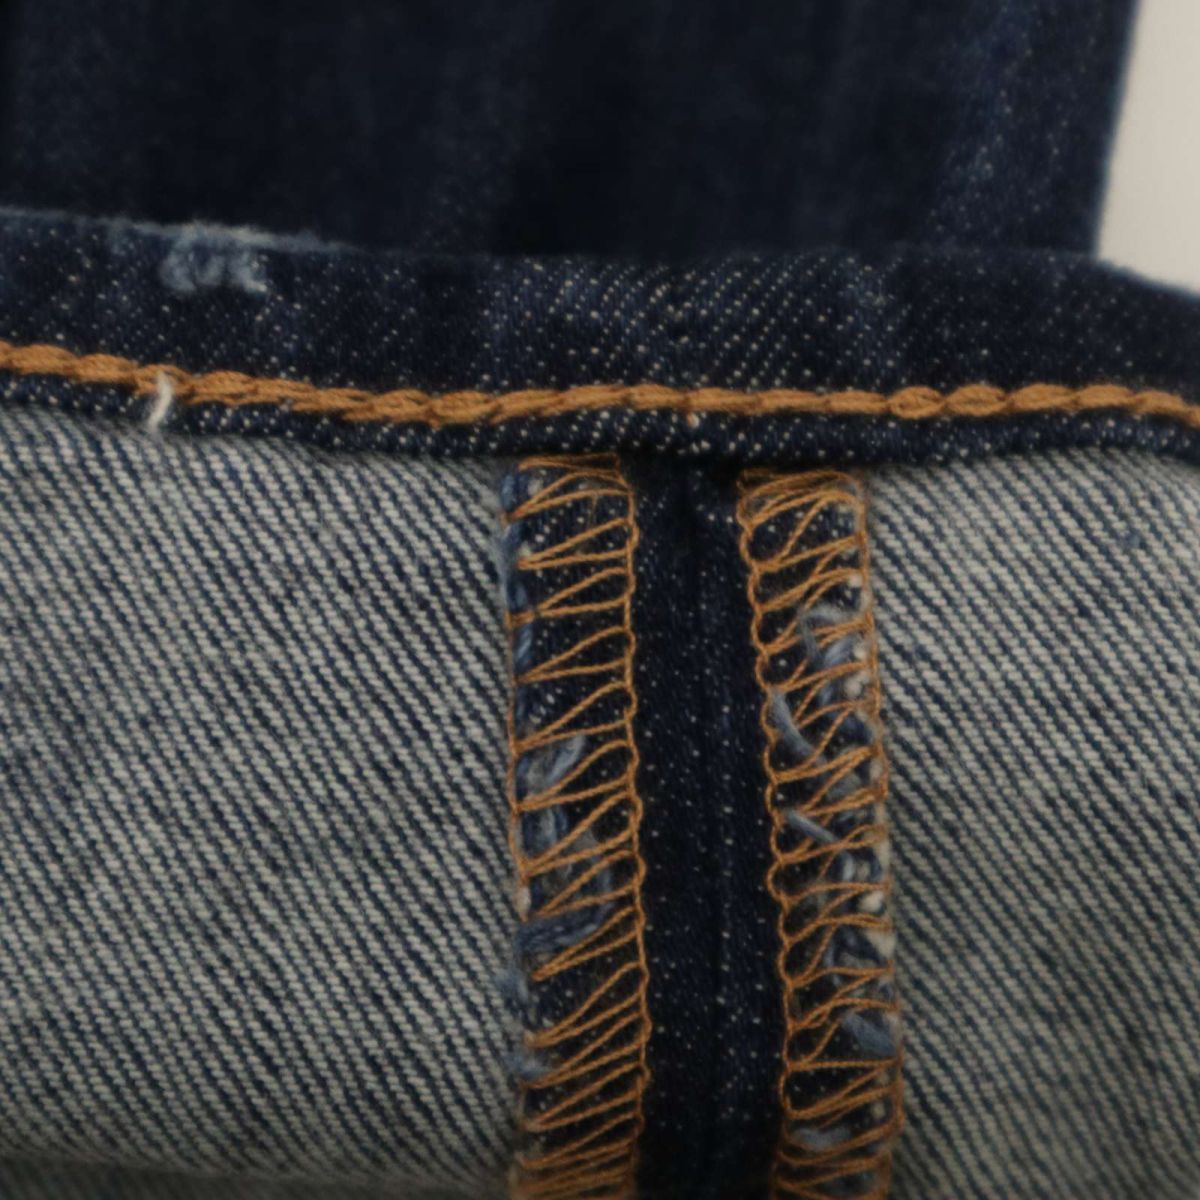 AZUL by MOUSSY azur Moussy через год высокий стрейч USED обработка * обтягивающие джинсы брюки джинсы Sz.S мужской C4B00804_2#R